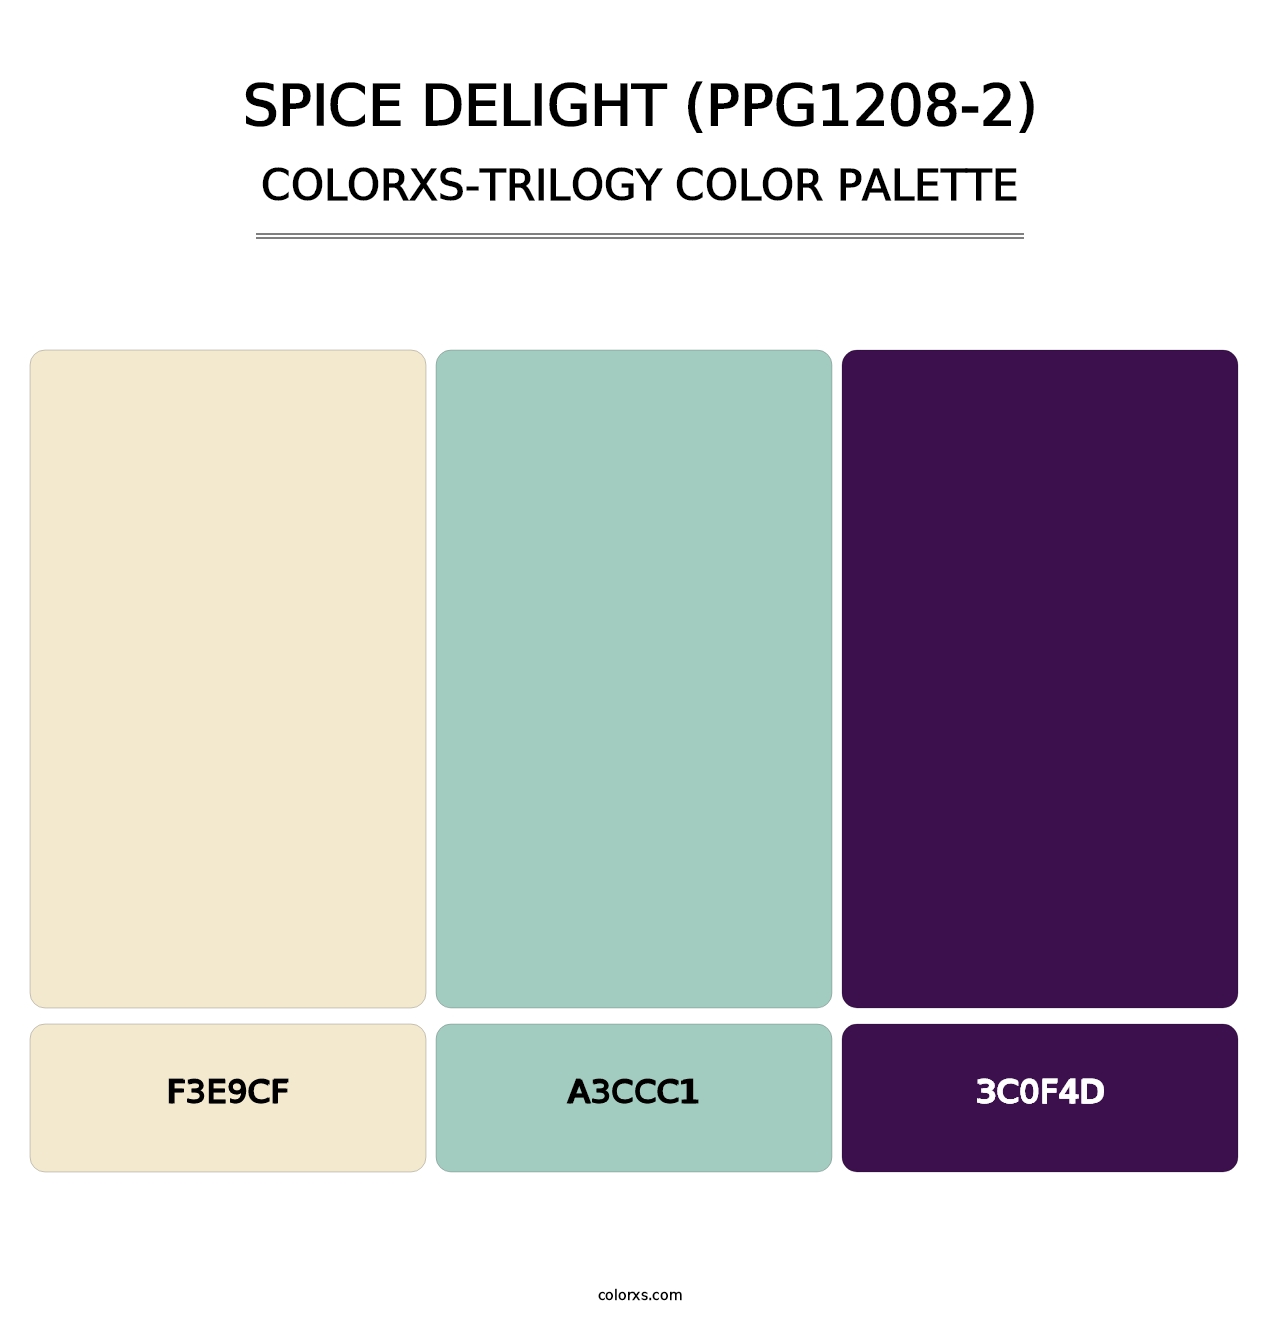 Spice Delight (PPG1208-2) - Colorxs Trilogy Palette